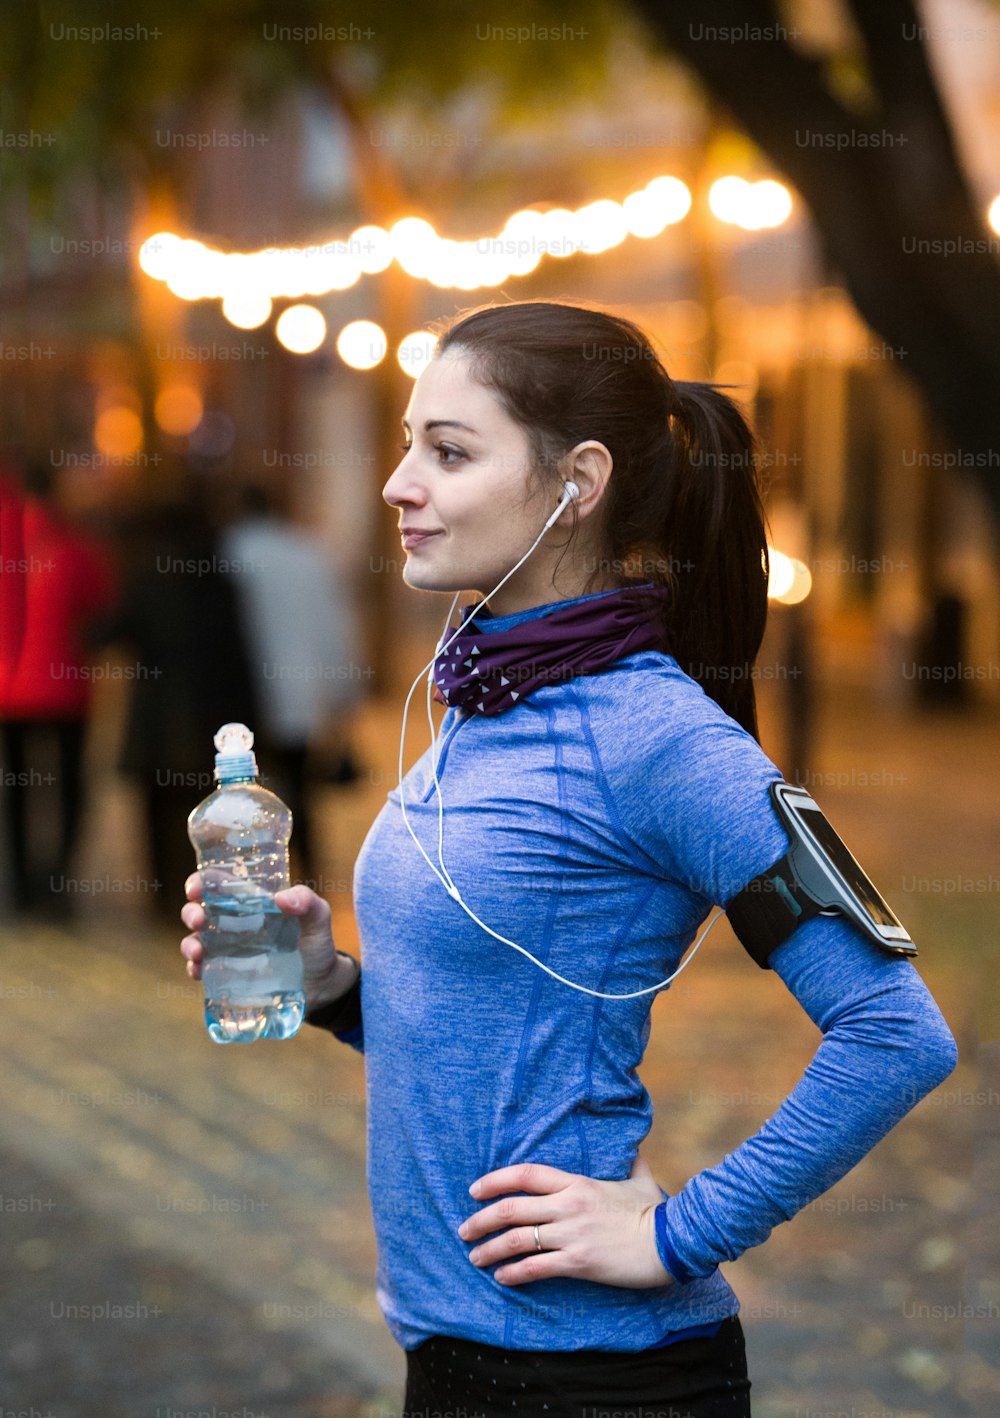 Bella giovane donna con smart phone e auricolari, ascoltando musica, riposando, bevendo acqua dalla bottiglia. Correre nella città notturna illuminata.